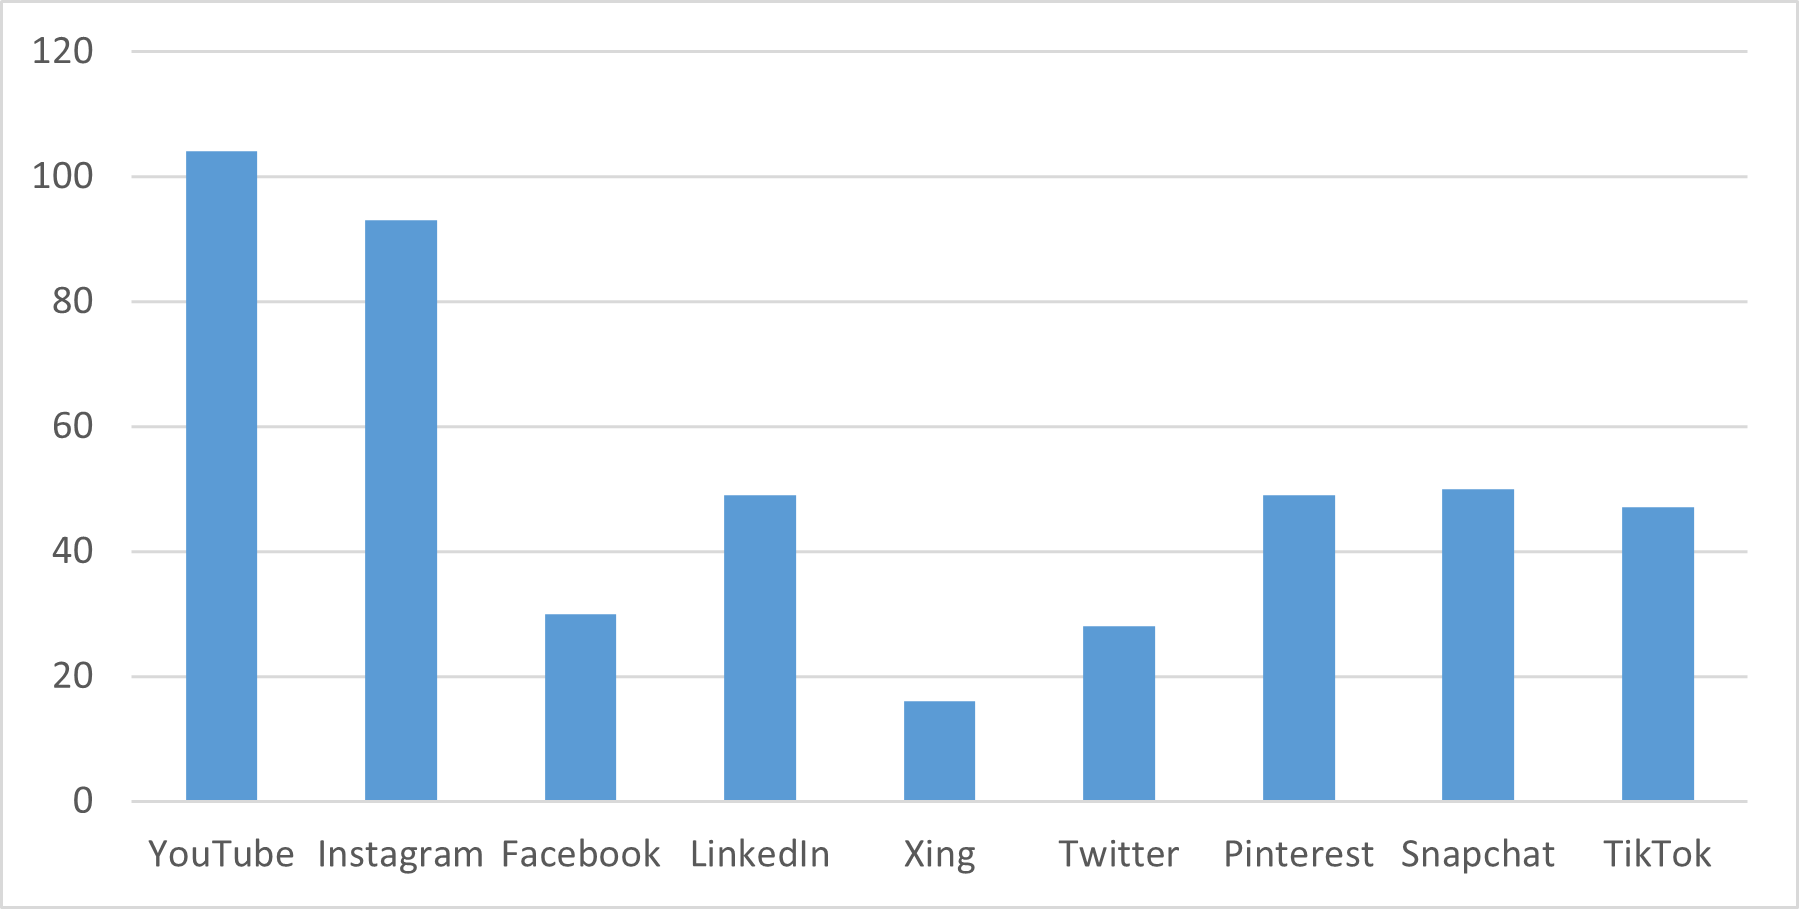 Säulendiagramm Nutzungsverteilung von sozialen Medien, X-Achse soziale Medien, Y-Achse Anzahl von Nutzern 